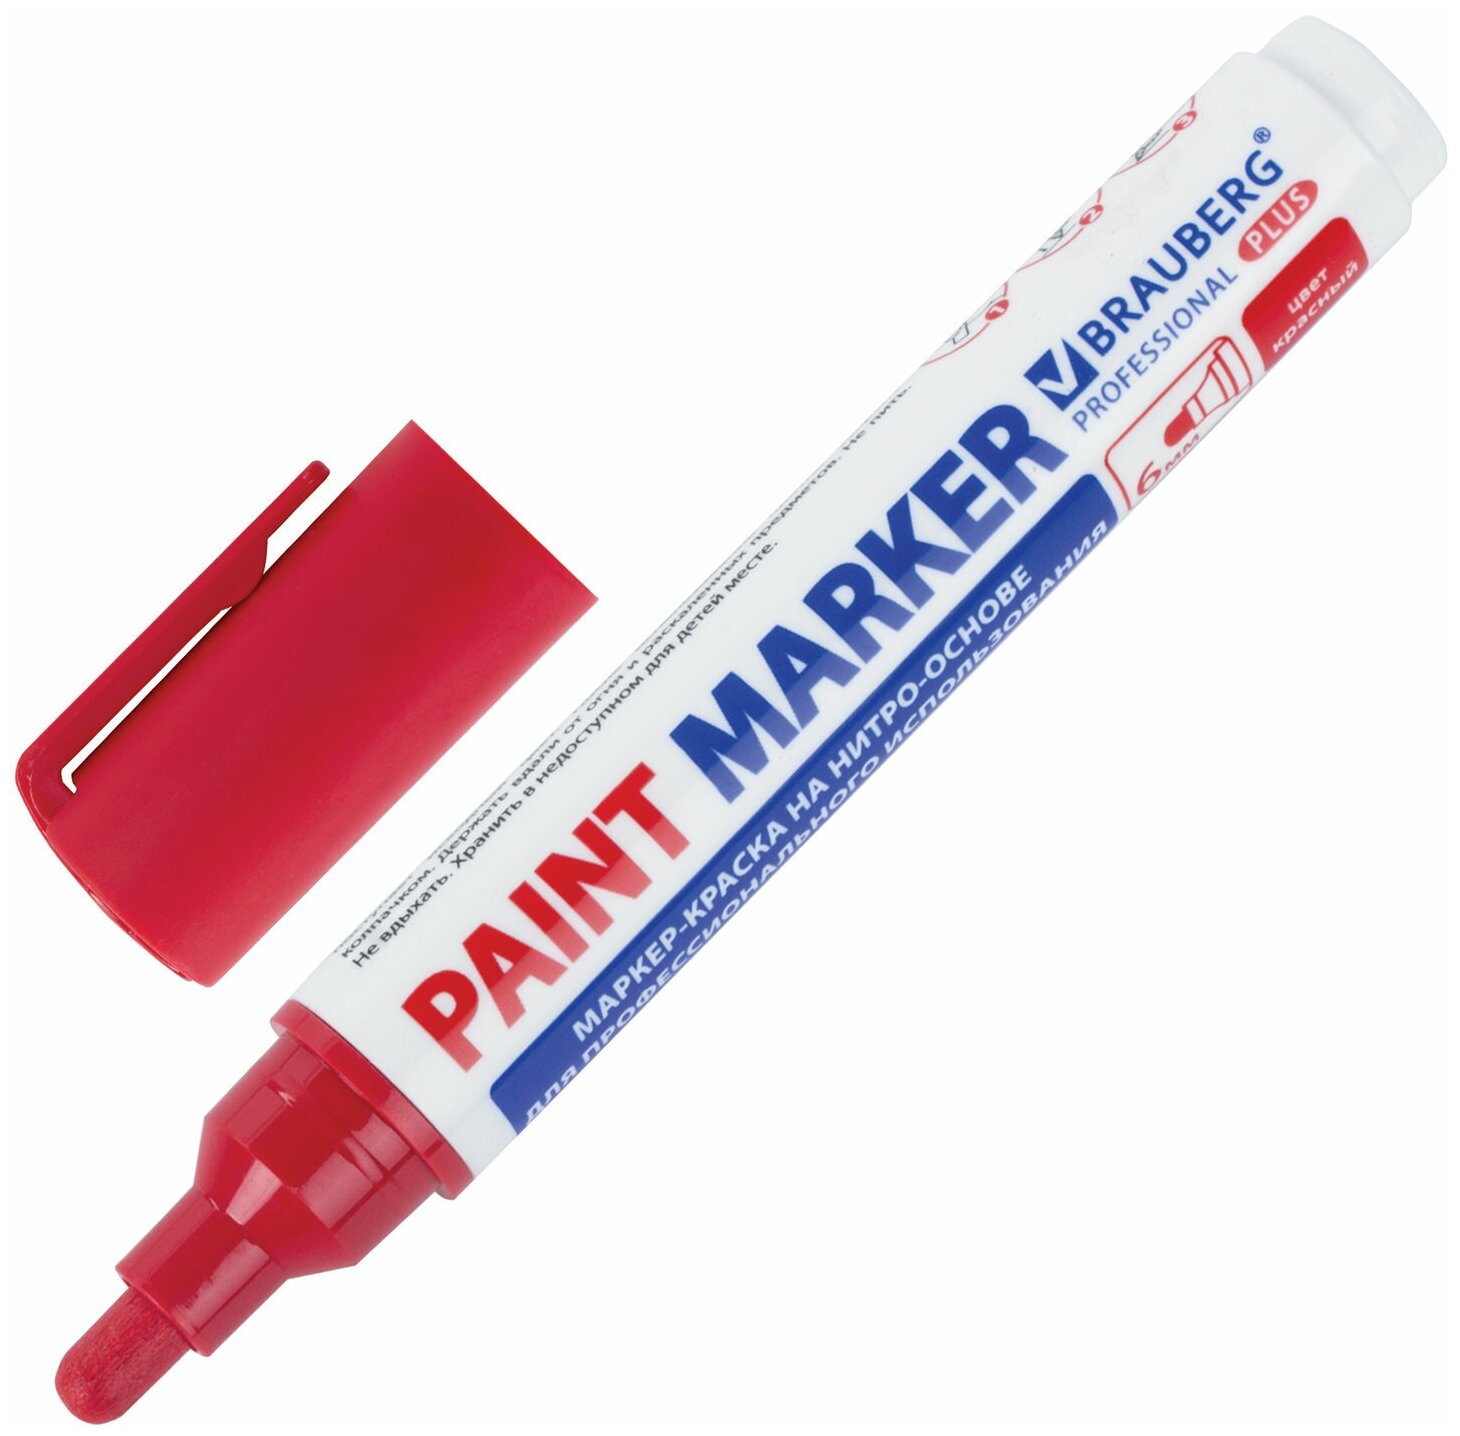 Маркер-краска лаковый paint marker по стеклу / бетону / авто 6 мм, Красный, Нитро-основа, Brauberg Professional Plus Extra, 151452